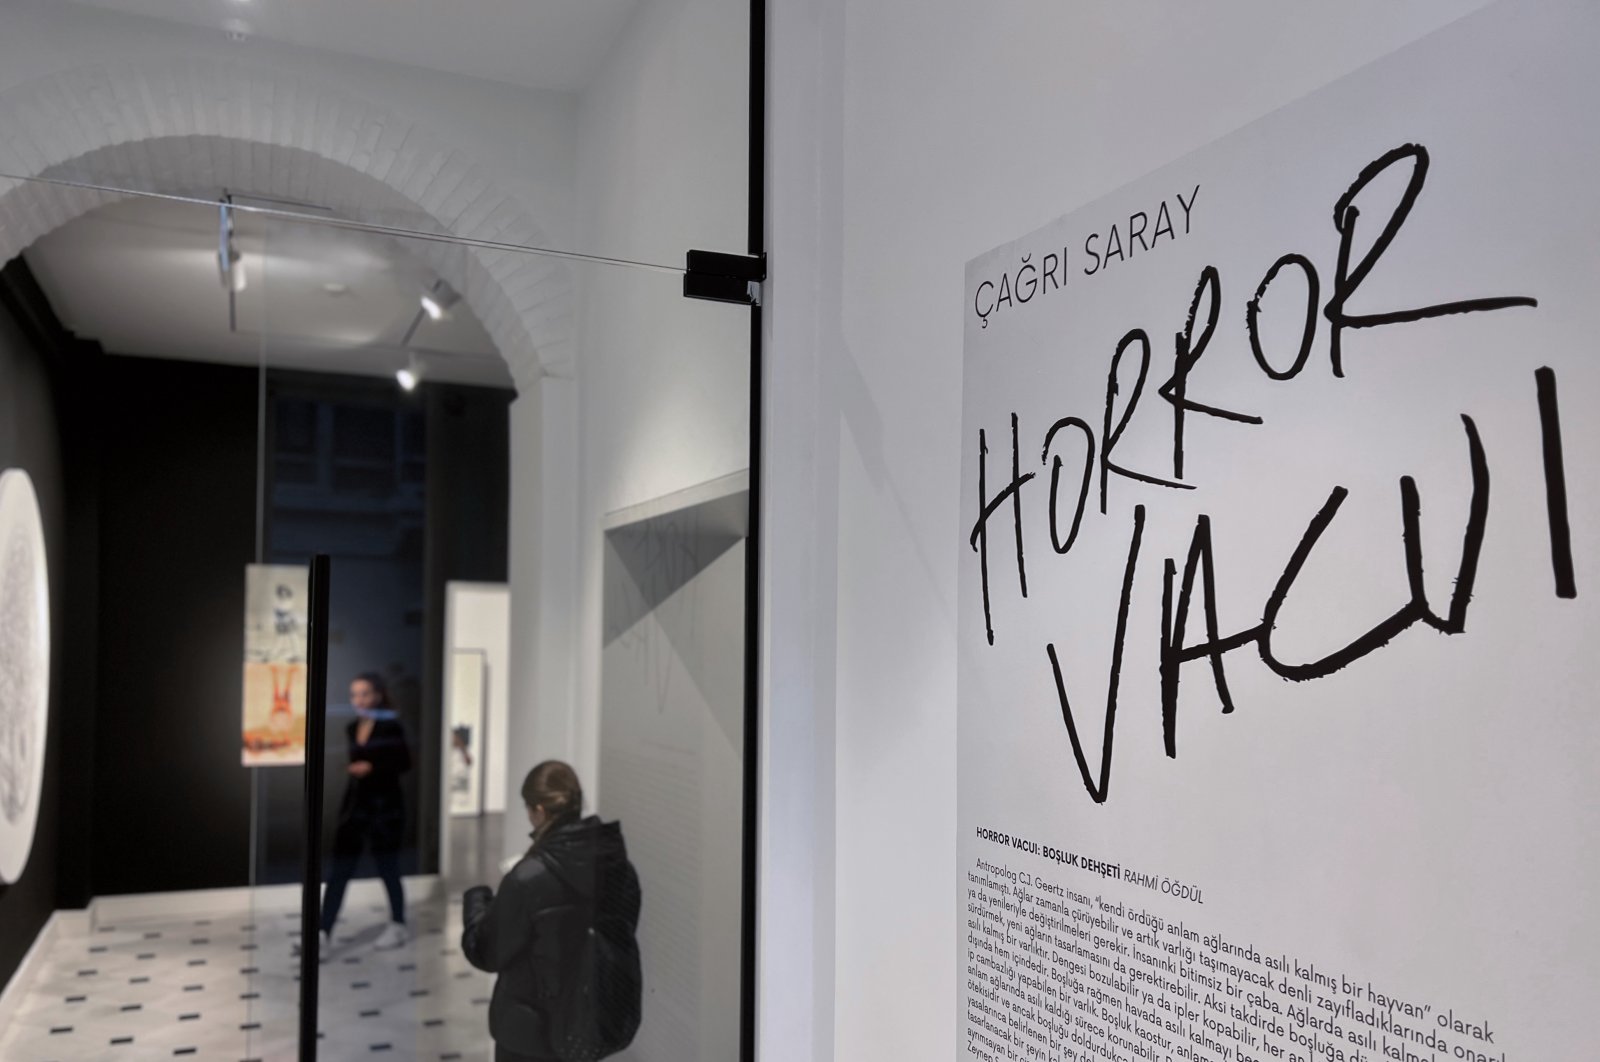 Pameran Vision Art ‘Horror Vacui’ mendorong batas keberadaan manusia